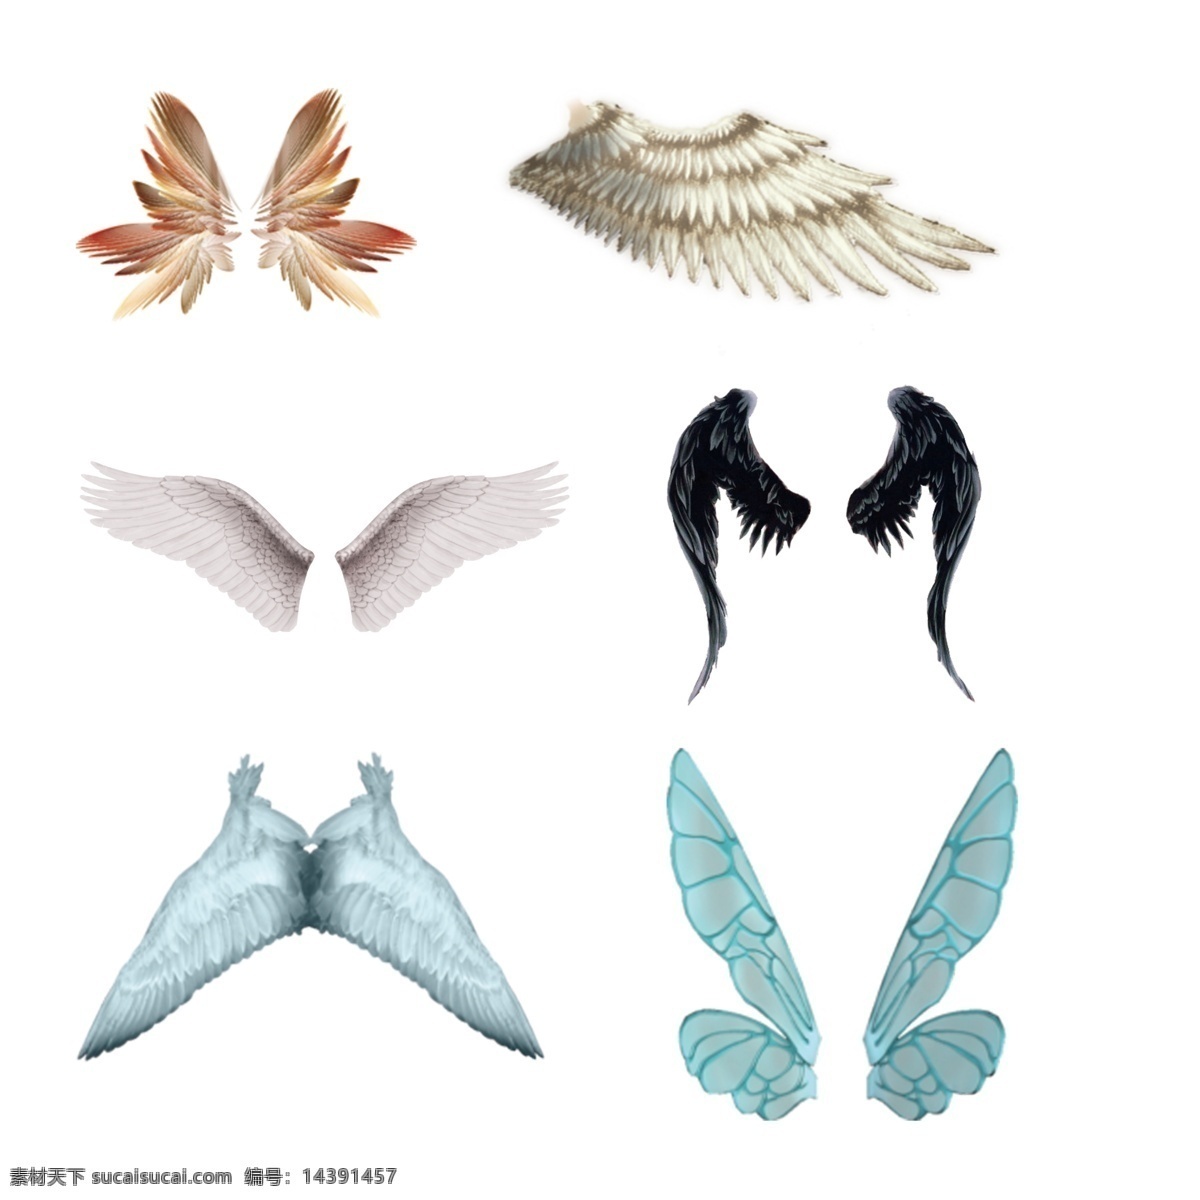 各种鸟类翅膀 鸟类翅膀 翅膀 昆虫翅膀 蝴蝶翅膀 蝴蝶 鸟类 生物世界